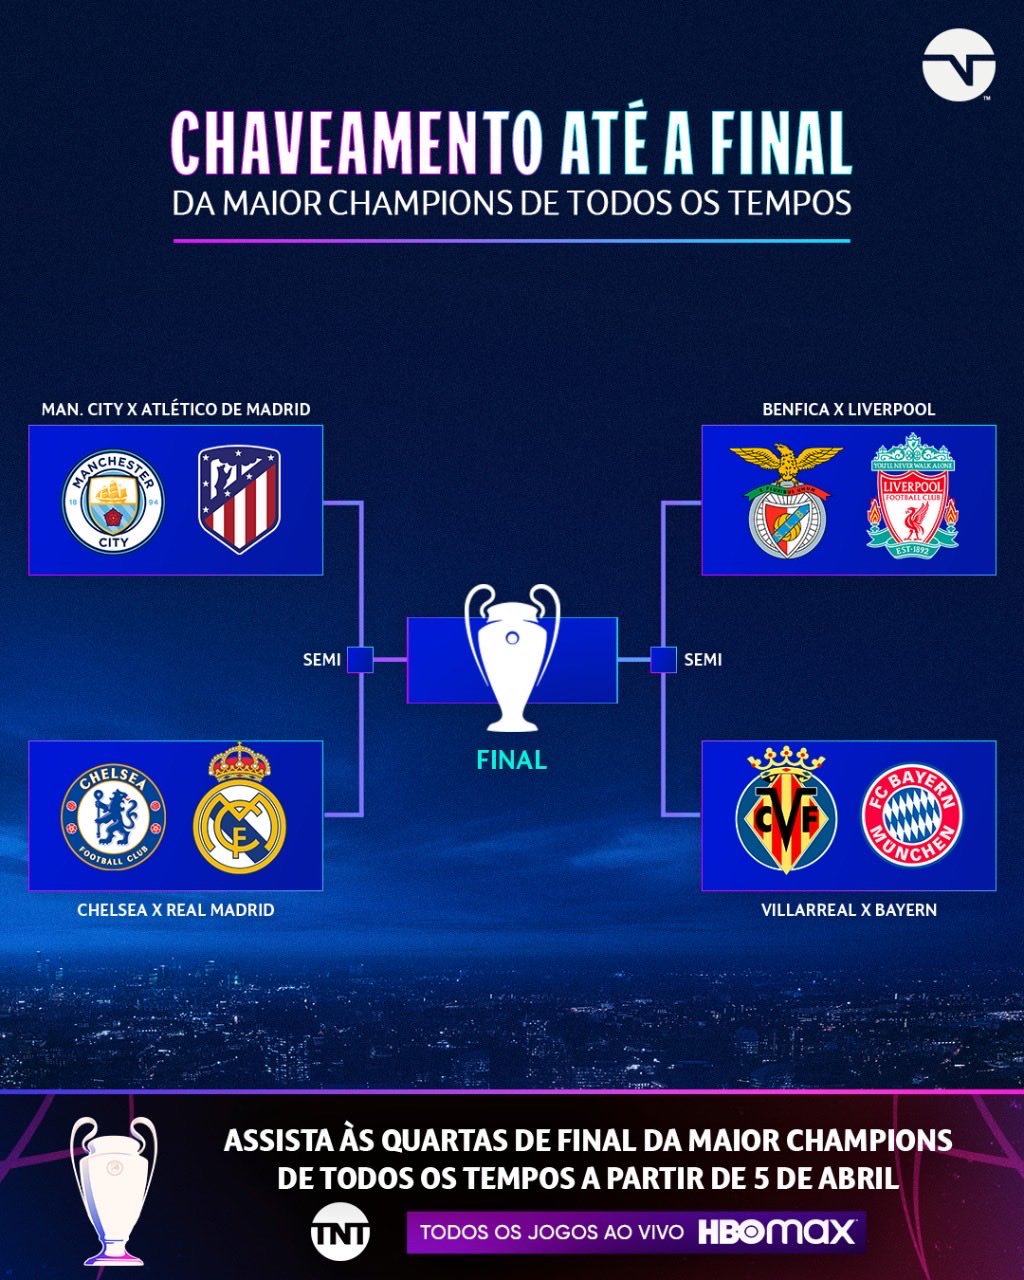 Alexandre Praetzel on X: Quartas de Final da Champions League definidas.  Exclusivo na ⁦@TNTSportsBR⁩ e ⁦@EstadioBR⁩.  / X